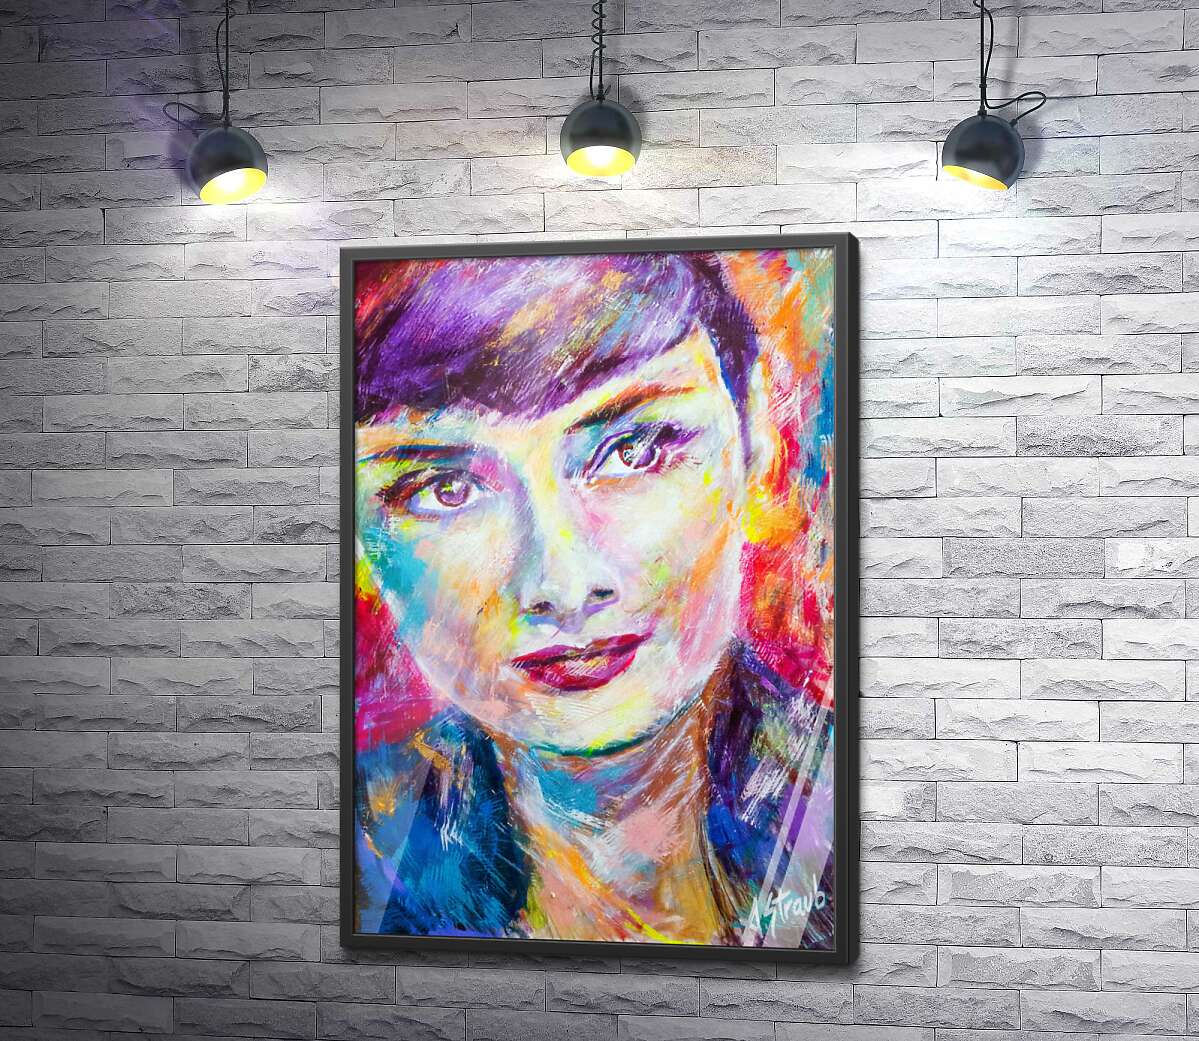 постер Сочетание красок на портрете Одри Хэпберн (Audrey Hepburn)